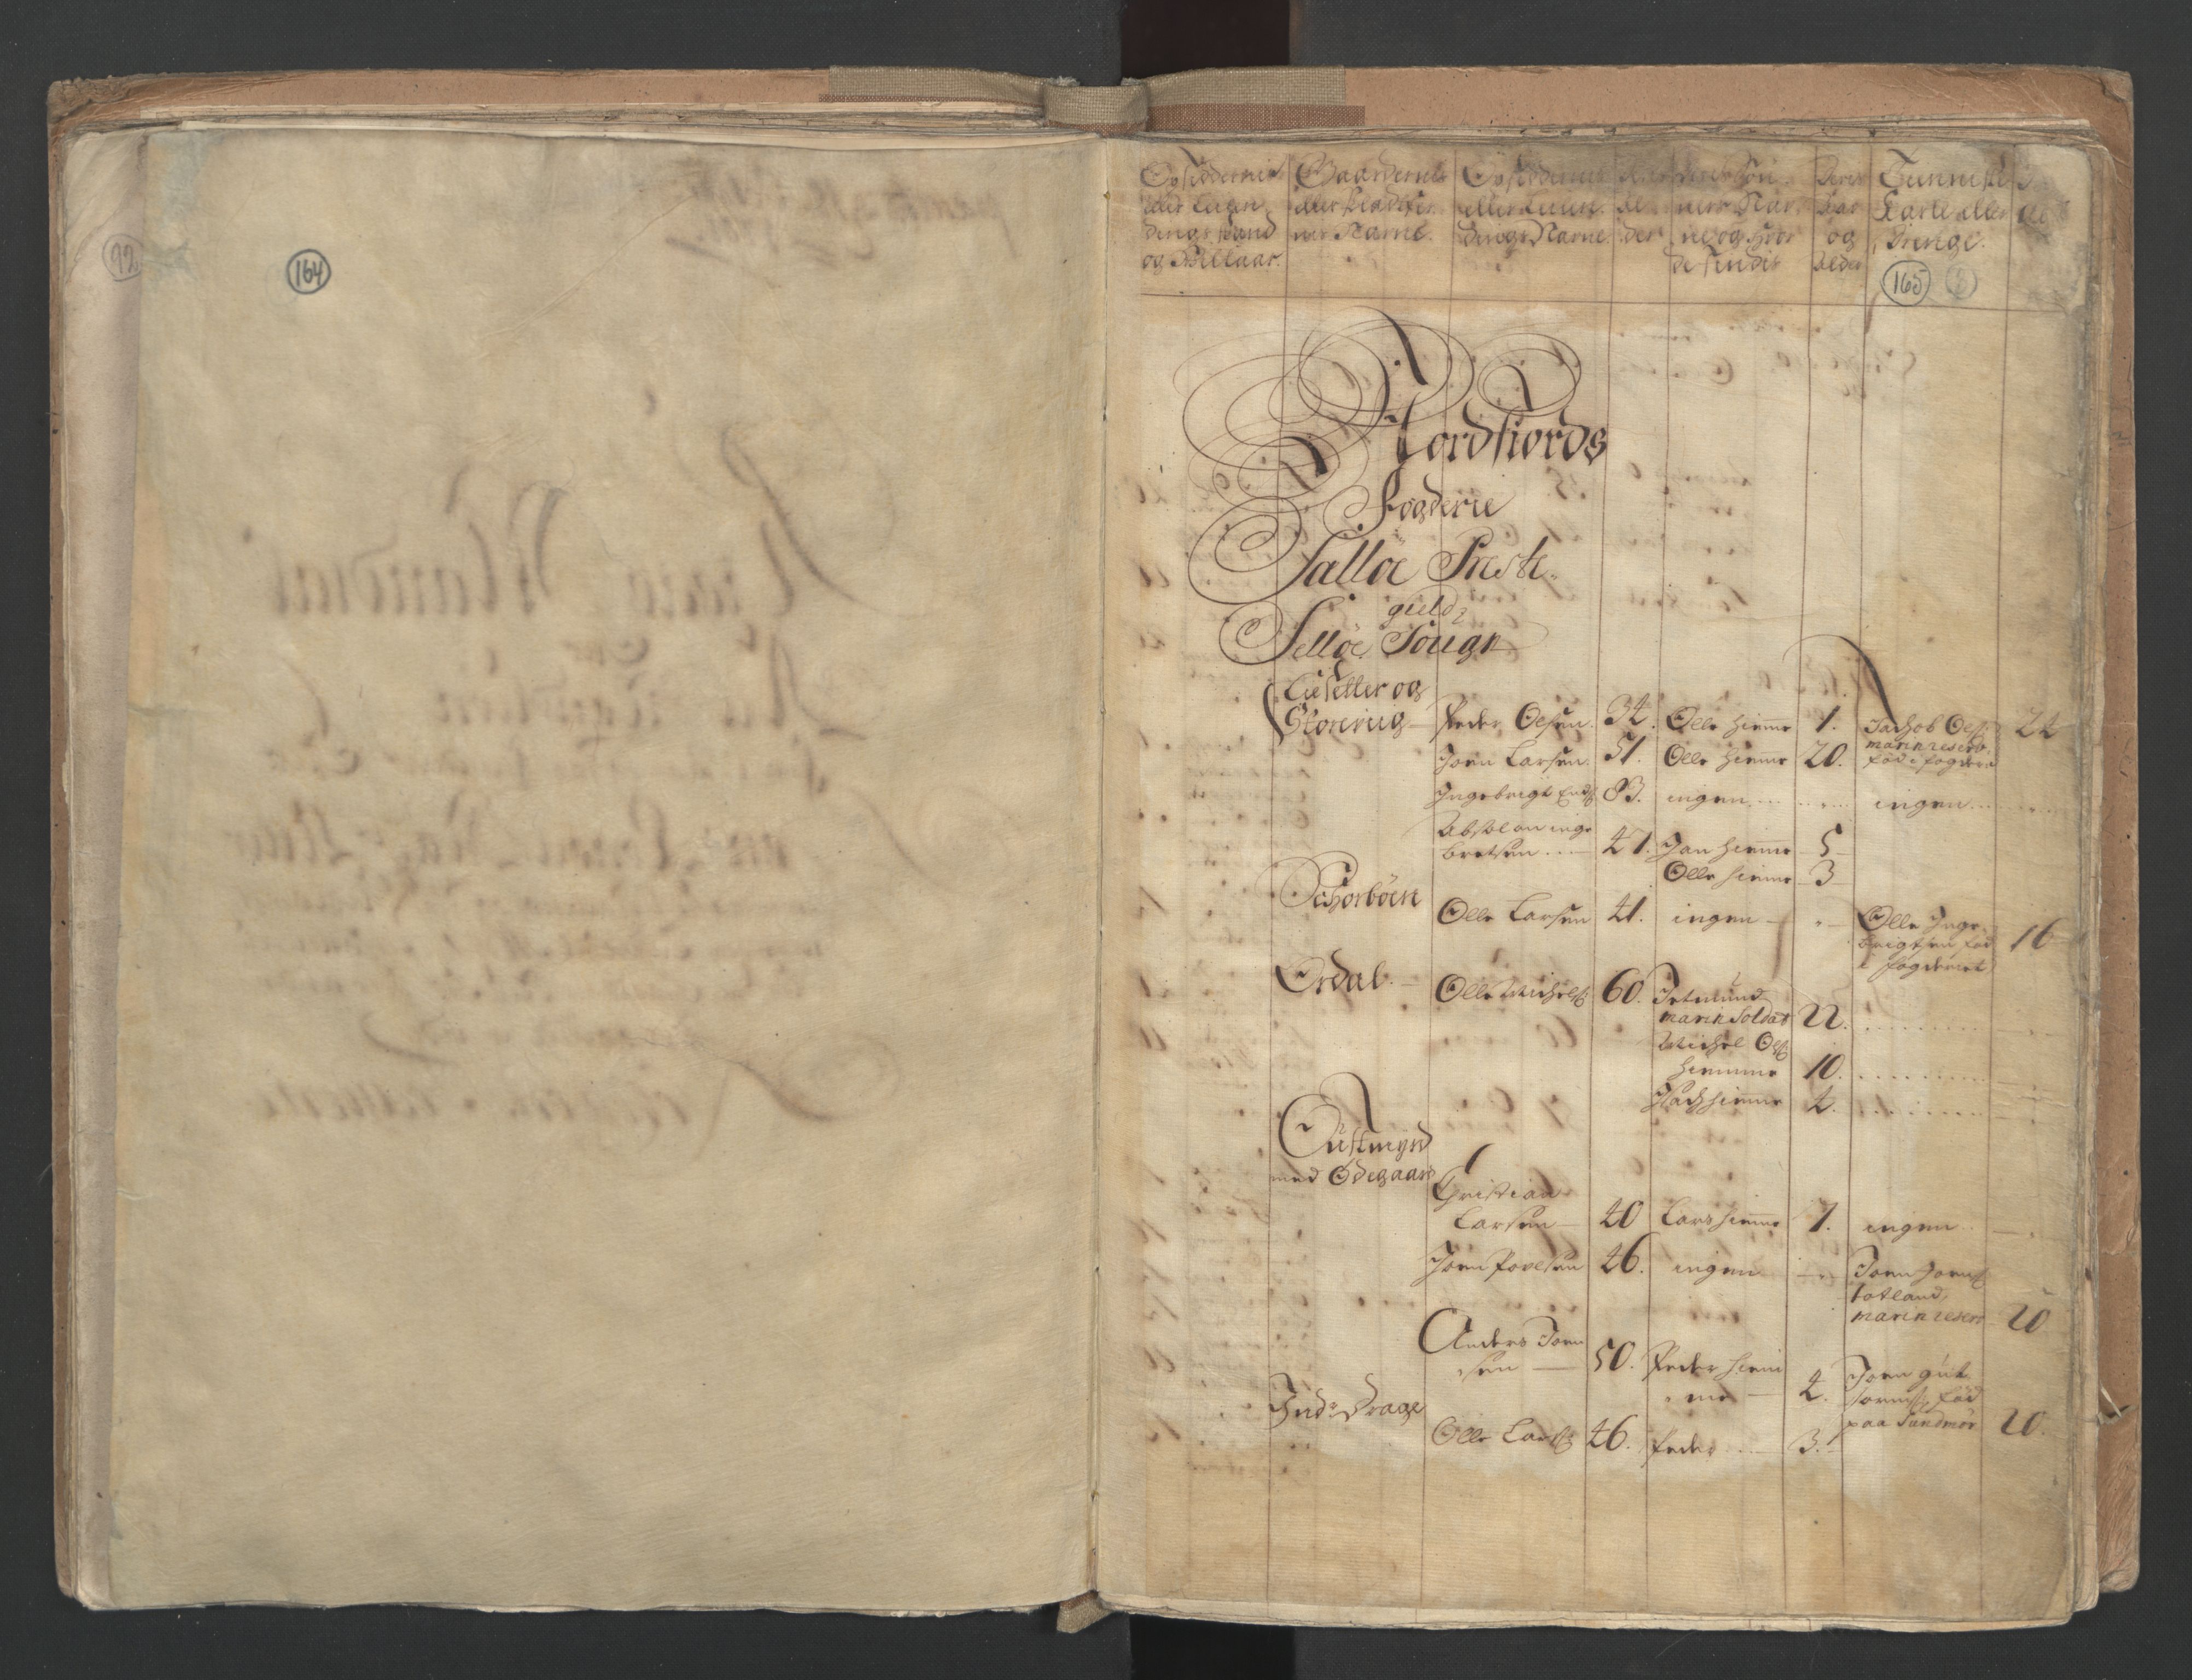 RA, Census (manntall) 1701, no. 9: Sunnfjord fogderi, Nordfjord fogderi and Svanø birk, 1701, p. 164-165